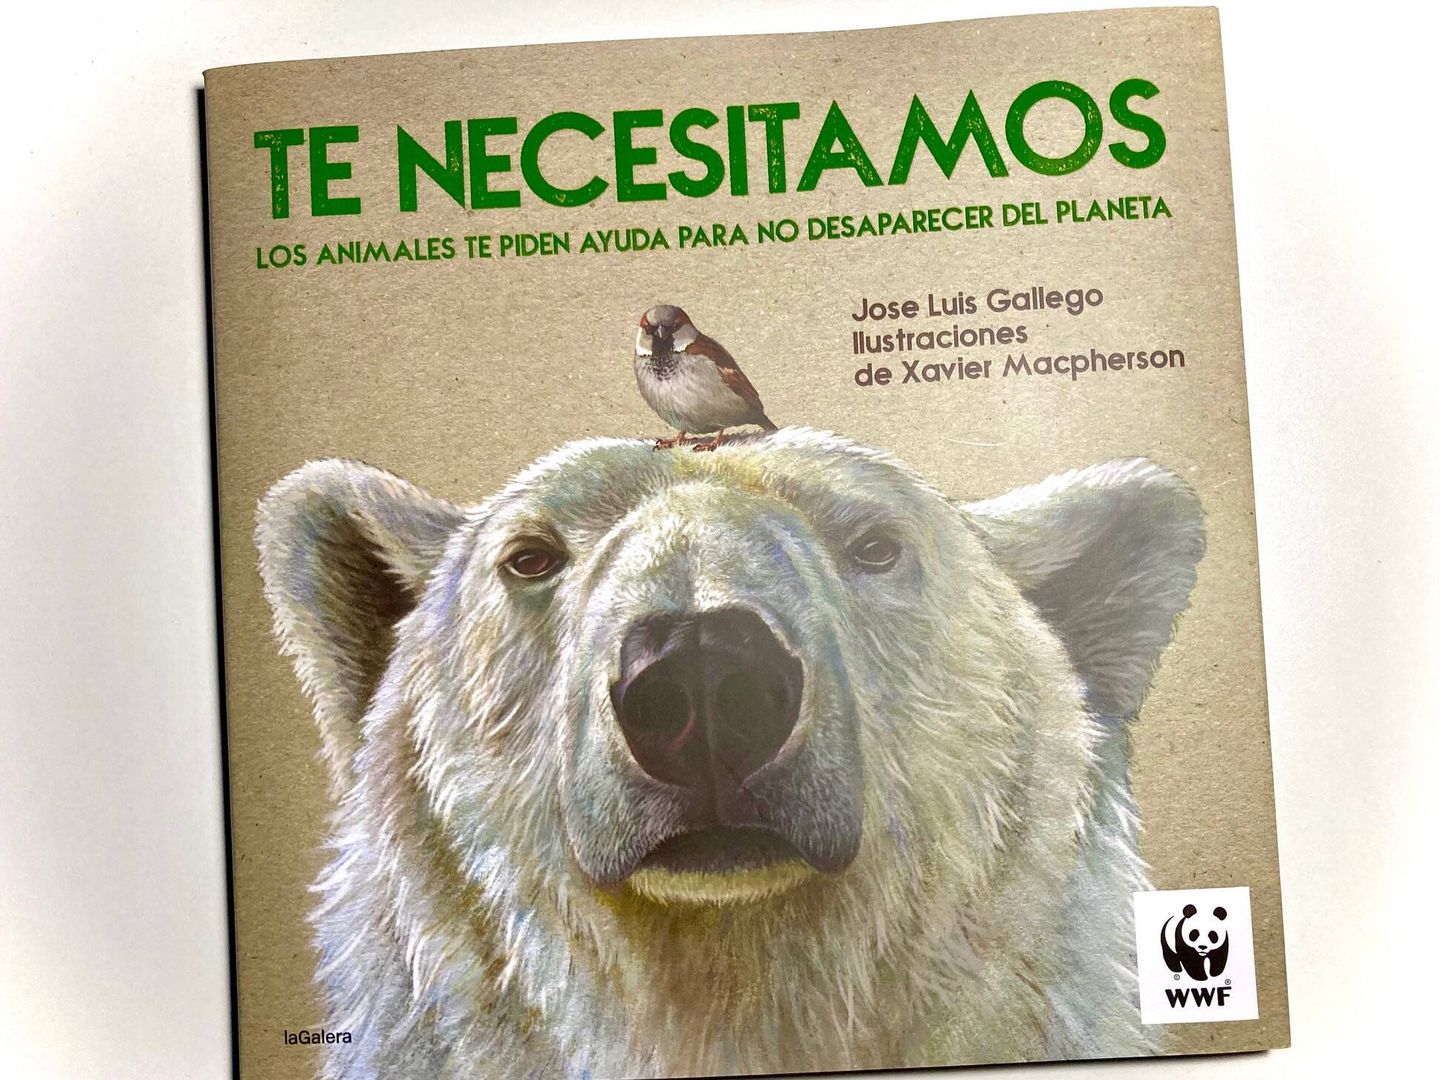 'Te necesitamos'. El libro de Jose Luis Gallego y Xavier Macpherson. (WWF)